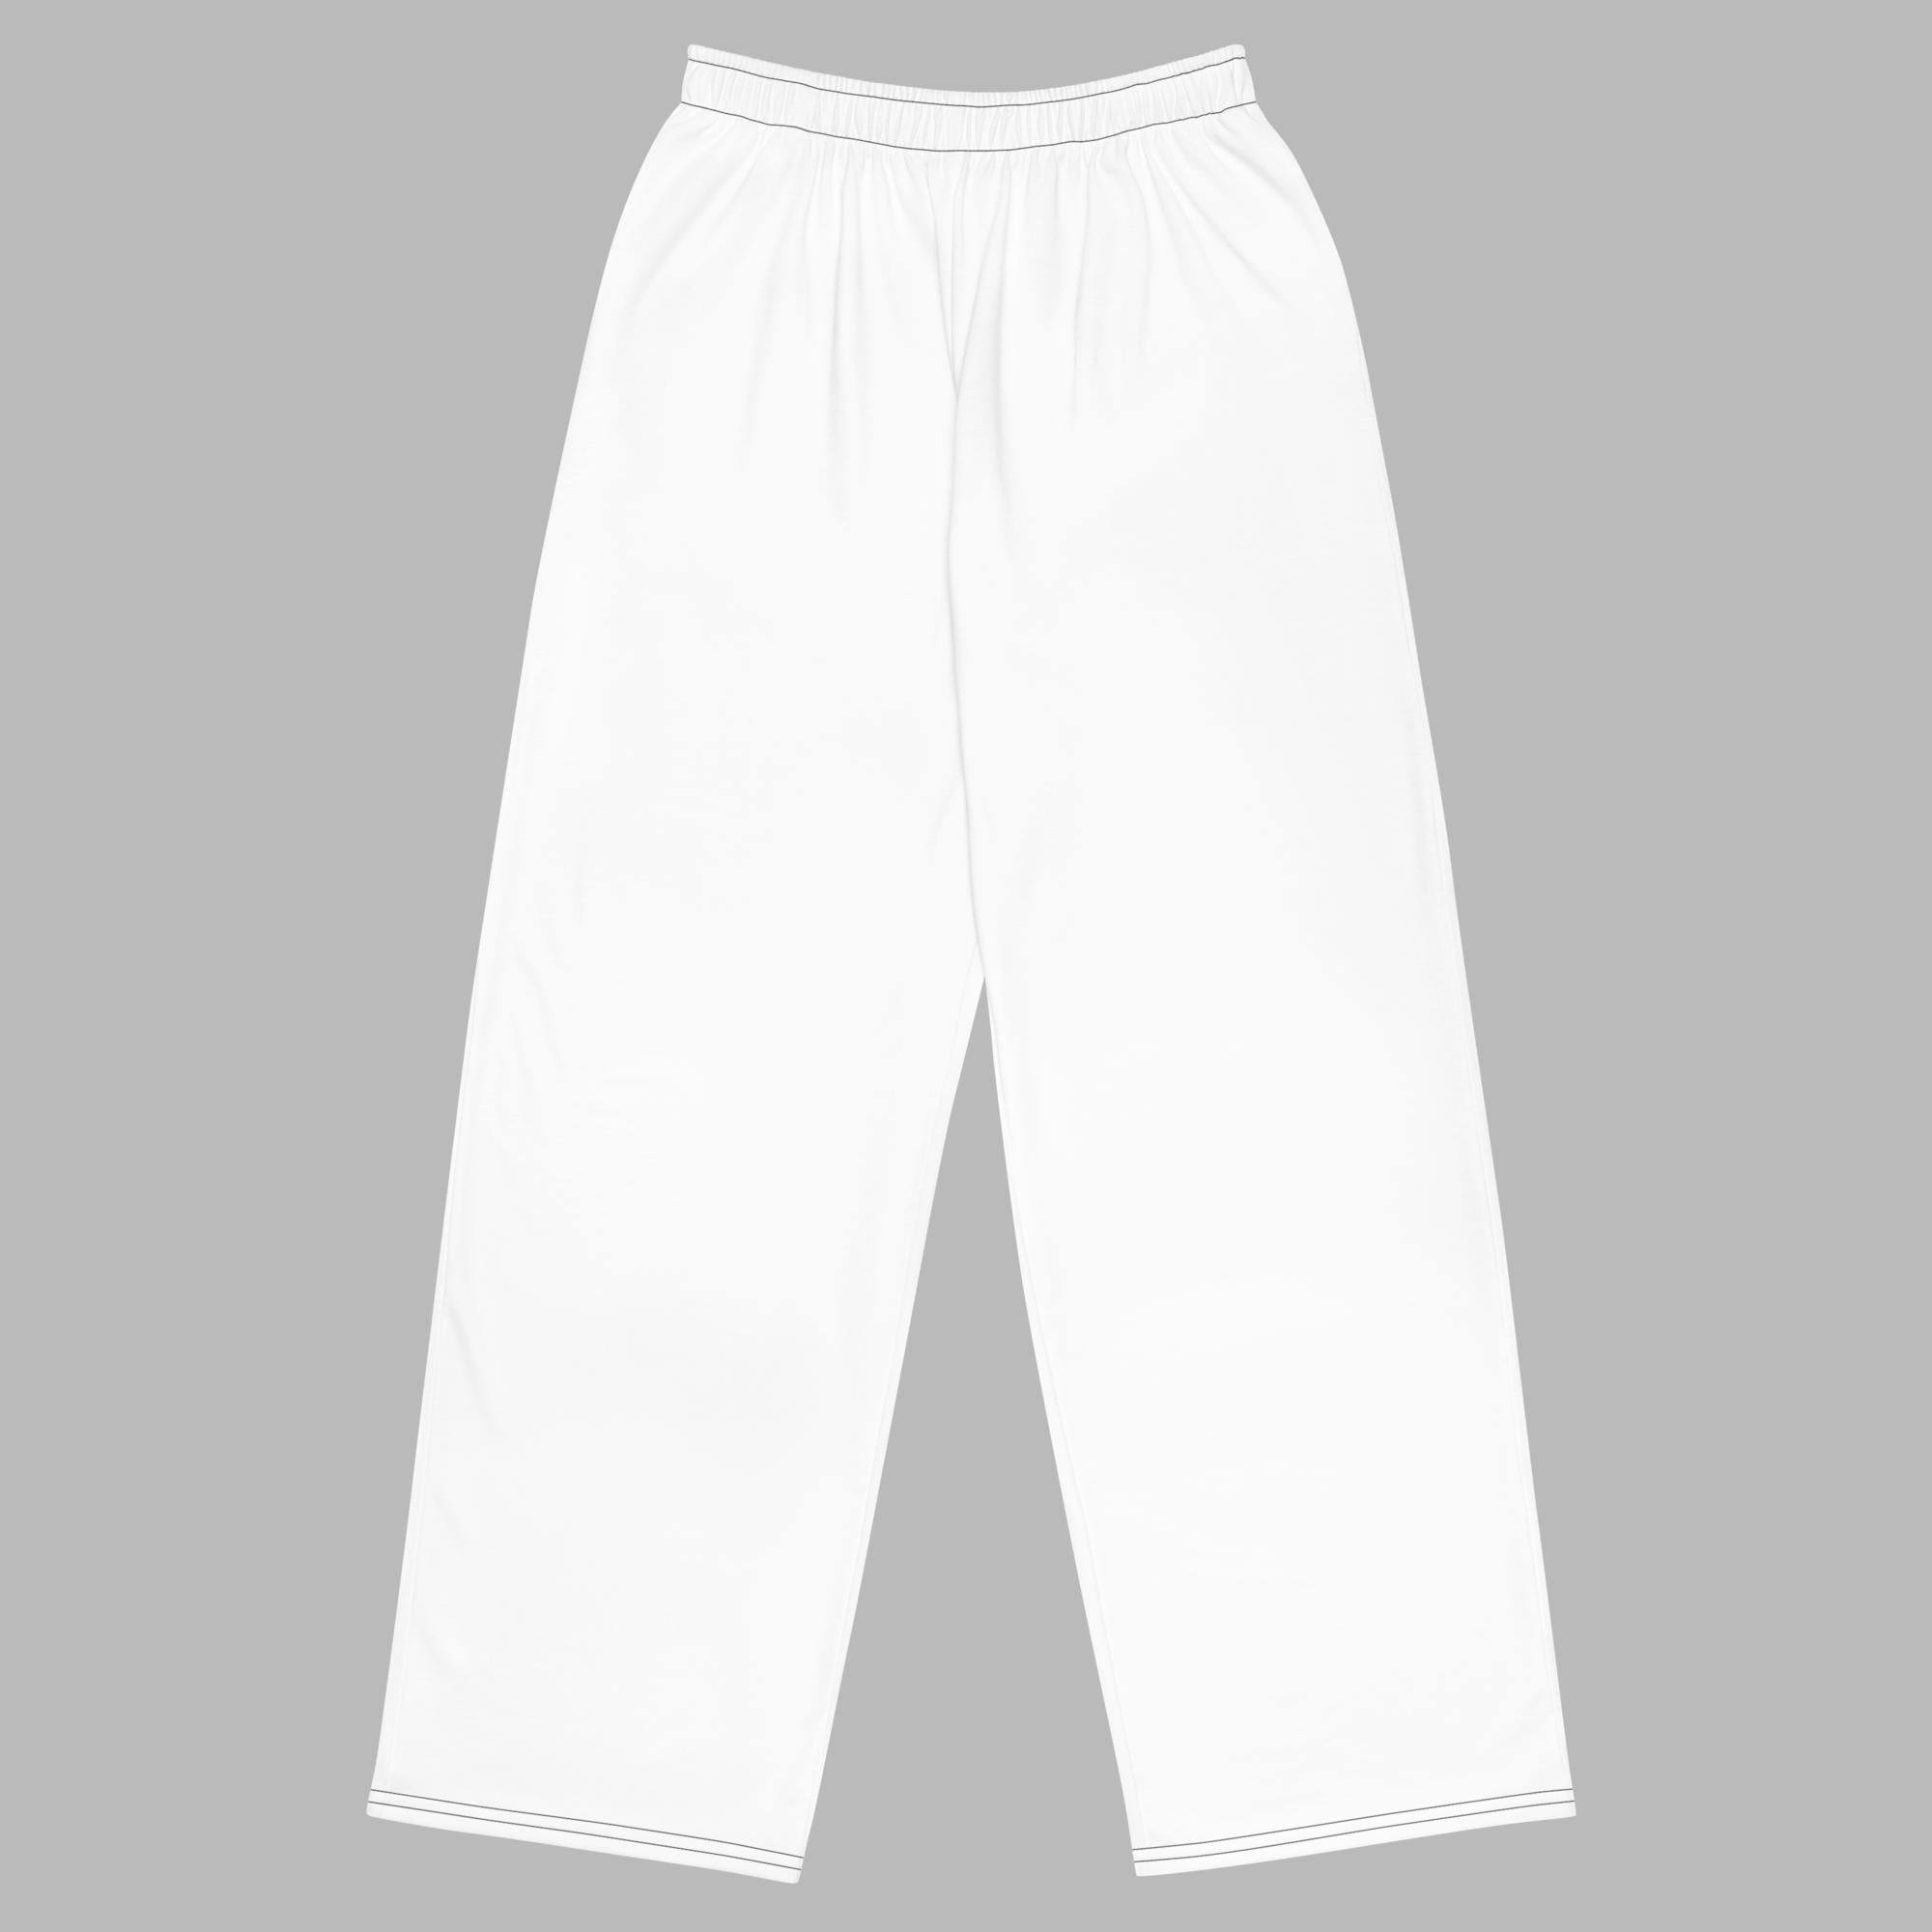 Pantalón ancho unisex - Blanco